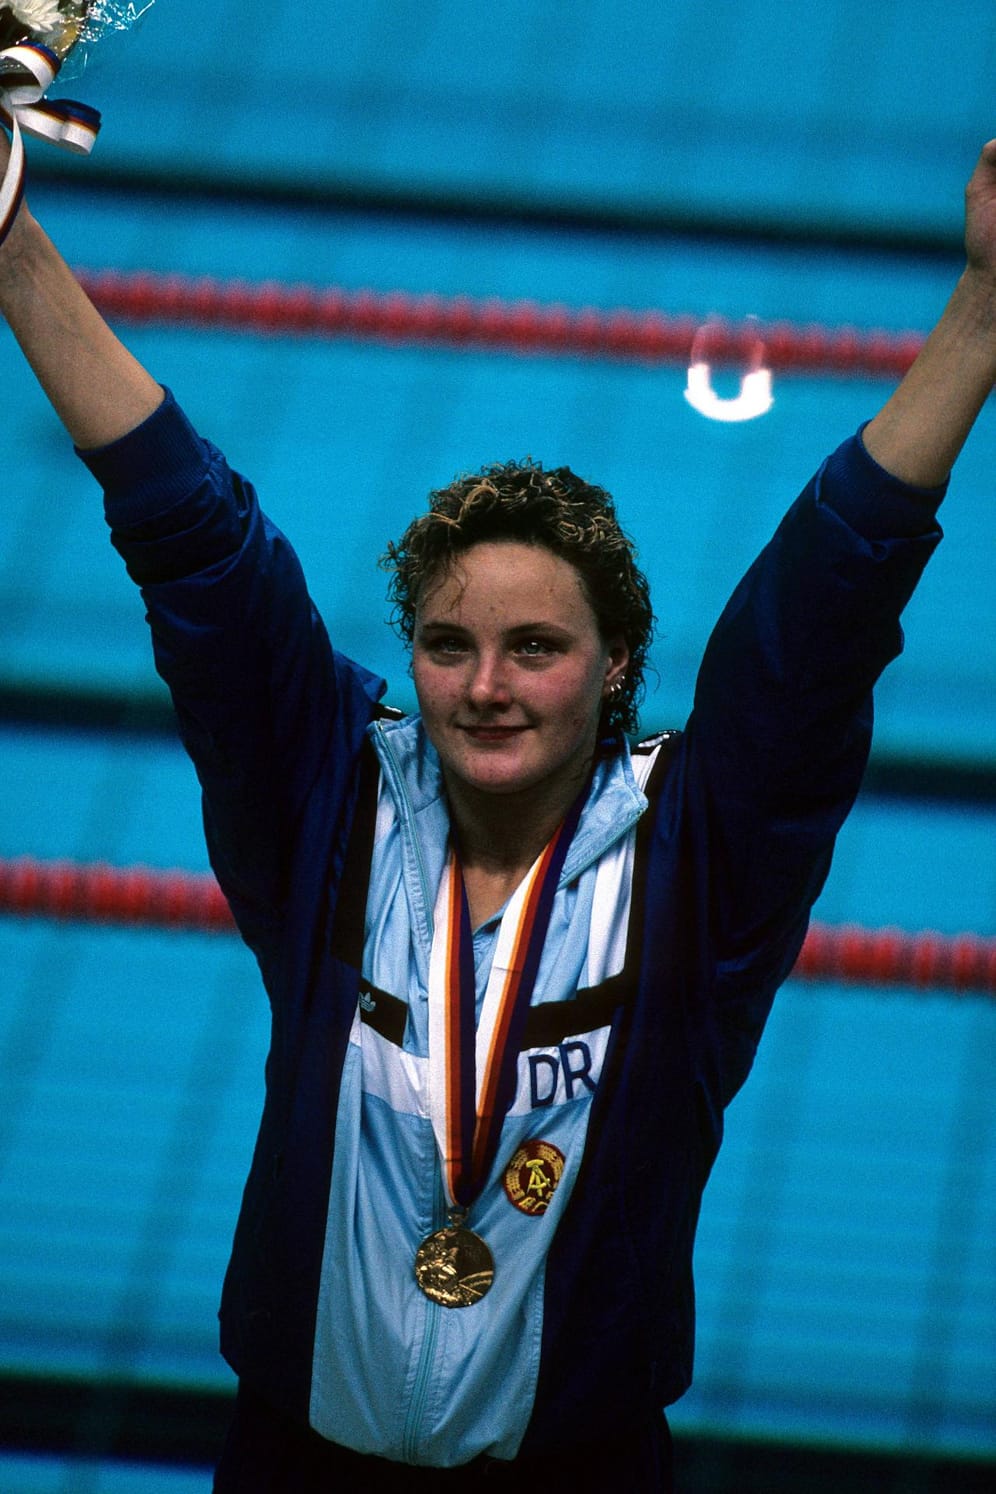 Auch Daniela Hunger war 1988 für die DDR in Seoul erfolgreich. Sie holte über 200 Meter Lagen und mit der 4x100 Meter Staffel Gold.